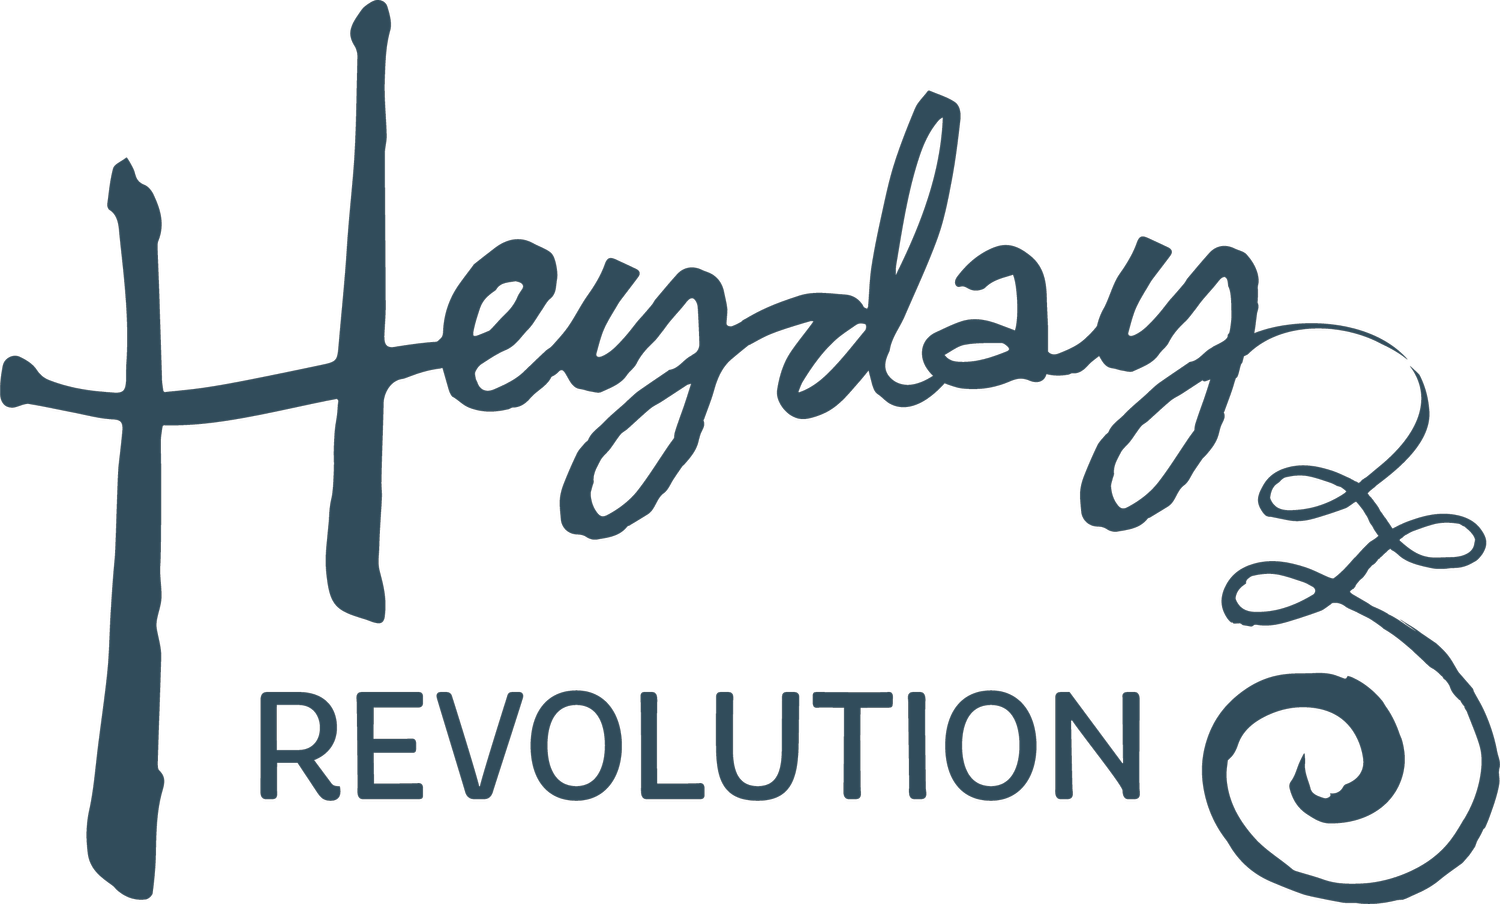 Heyday Revolution